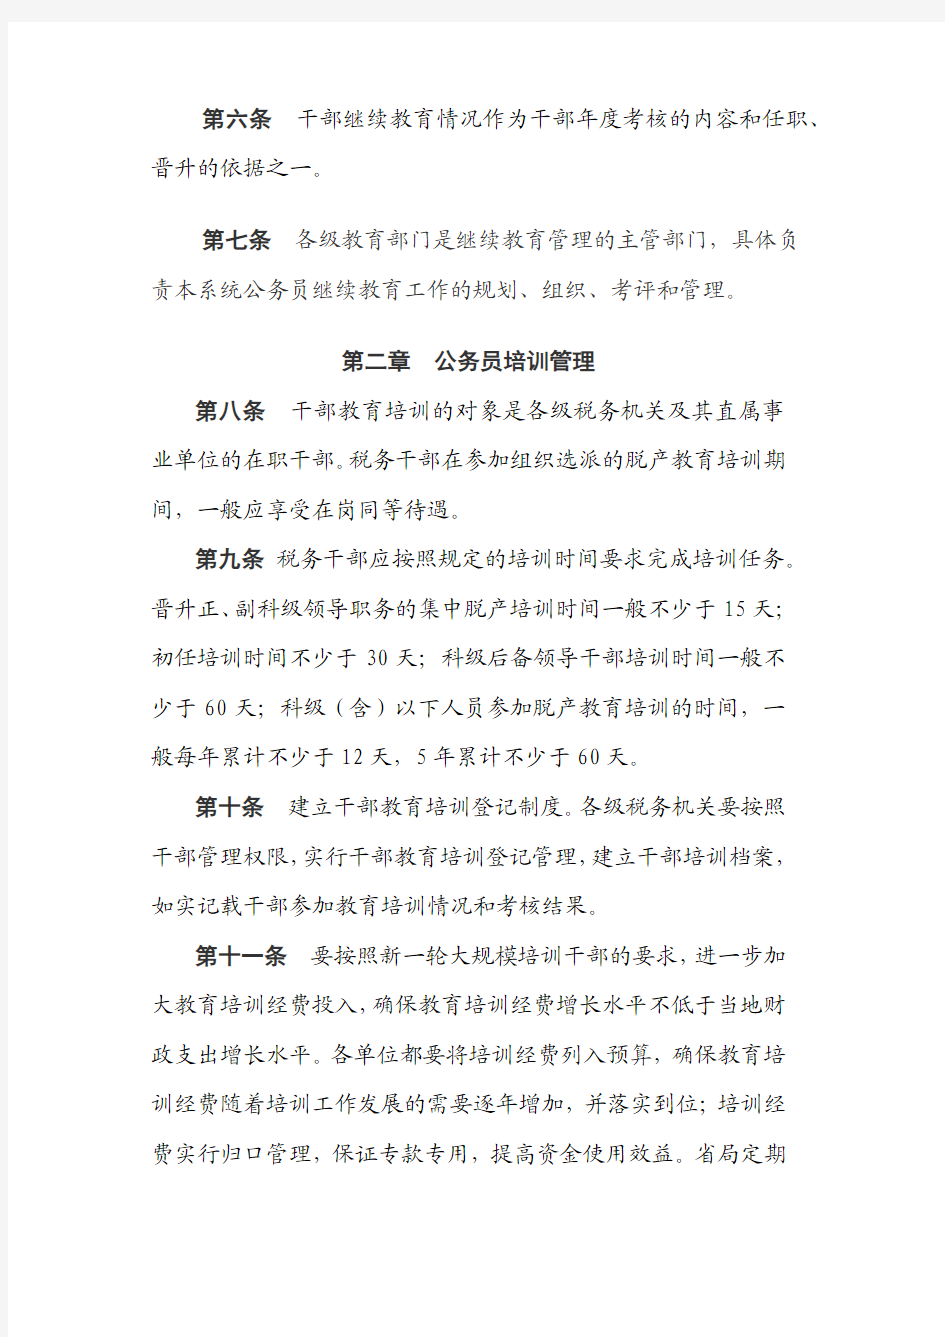 河南省国家税务局继续教育管理办法(修订)